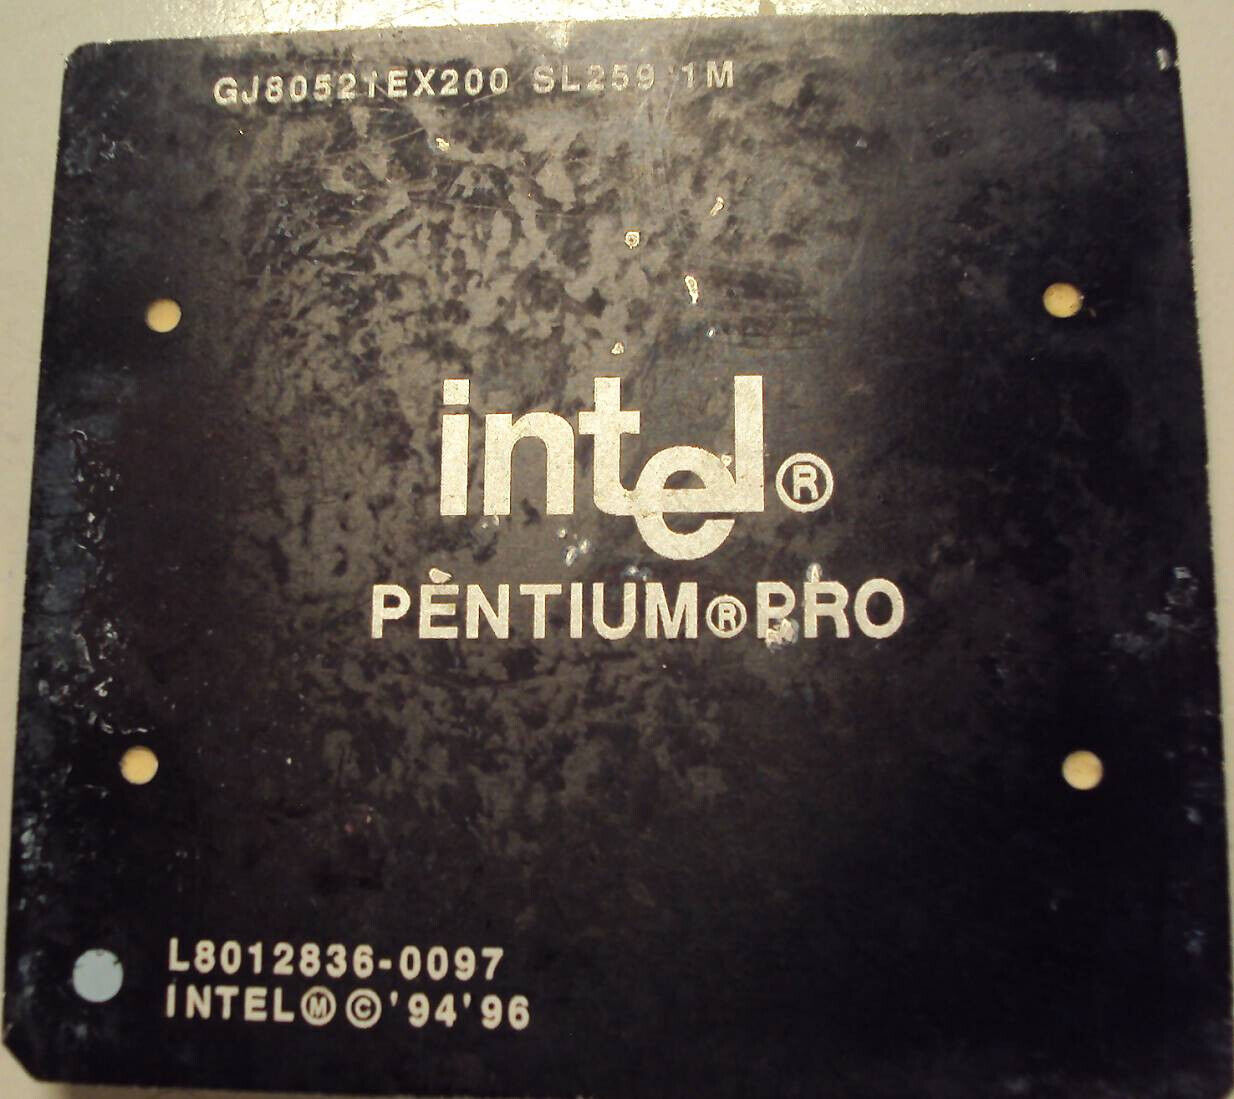 Super Rare INTEL  PentiumPRO black fiber and aluminum, GJ80521EX200 SL259 1M